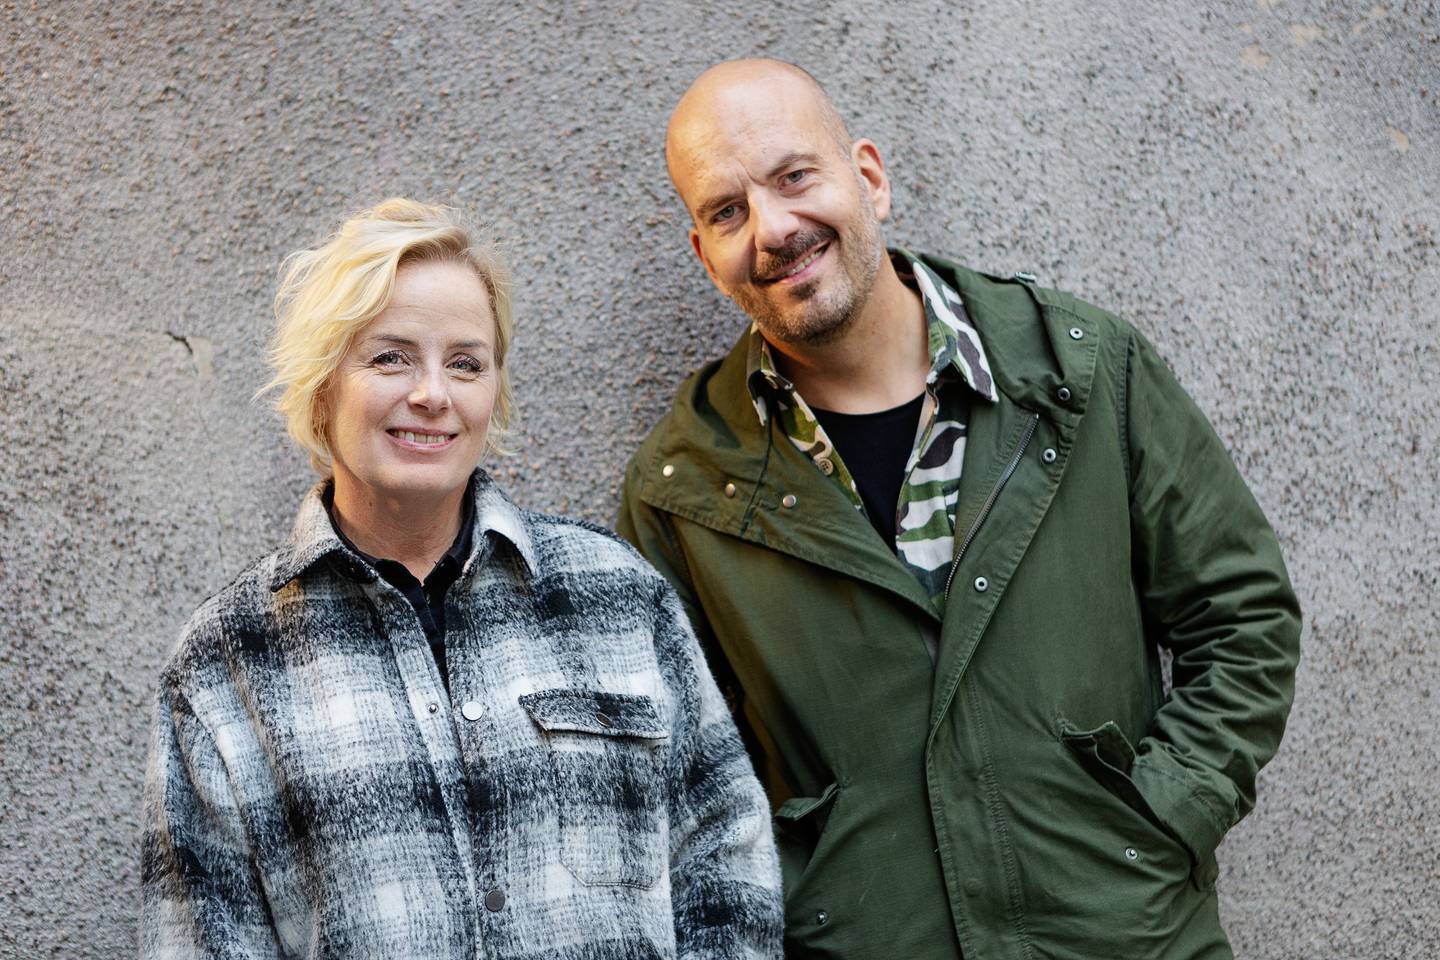 podden “Föräldrapeppen”, som görs av paret och fyrabarnsföräldrarna Jeanette och Gabriel Ingemarsson och produceras i samarbete med Dagen.